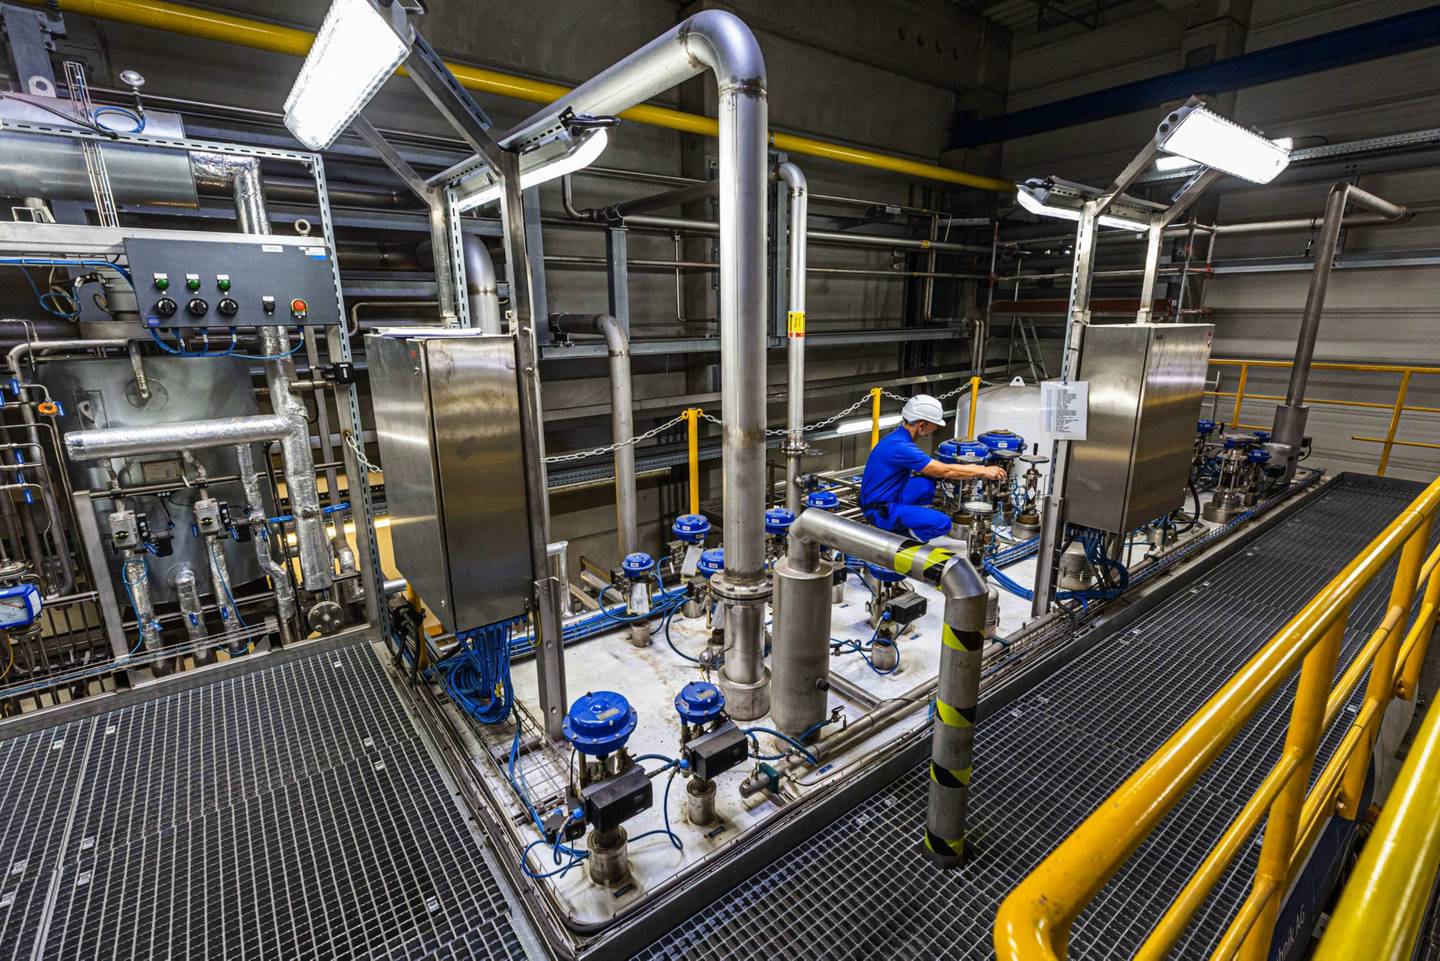 Un empleado ajusta una válvula en la caja fría para la producción de hidrógeno líquido (LH2) en una planta de hidrógeno de Linde AG en Leuna, Alemania, el martes 14 de julio de 2020.dfd